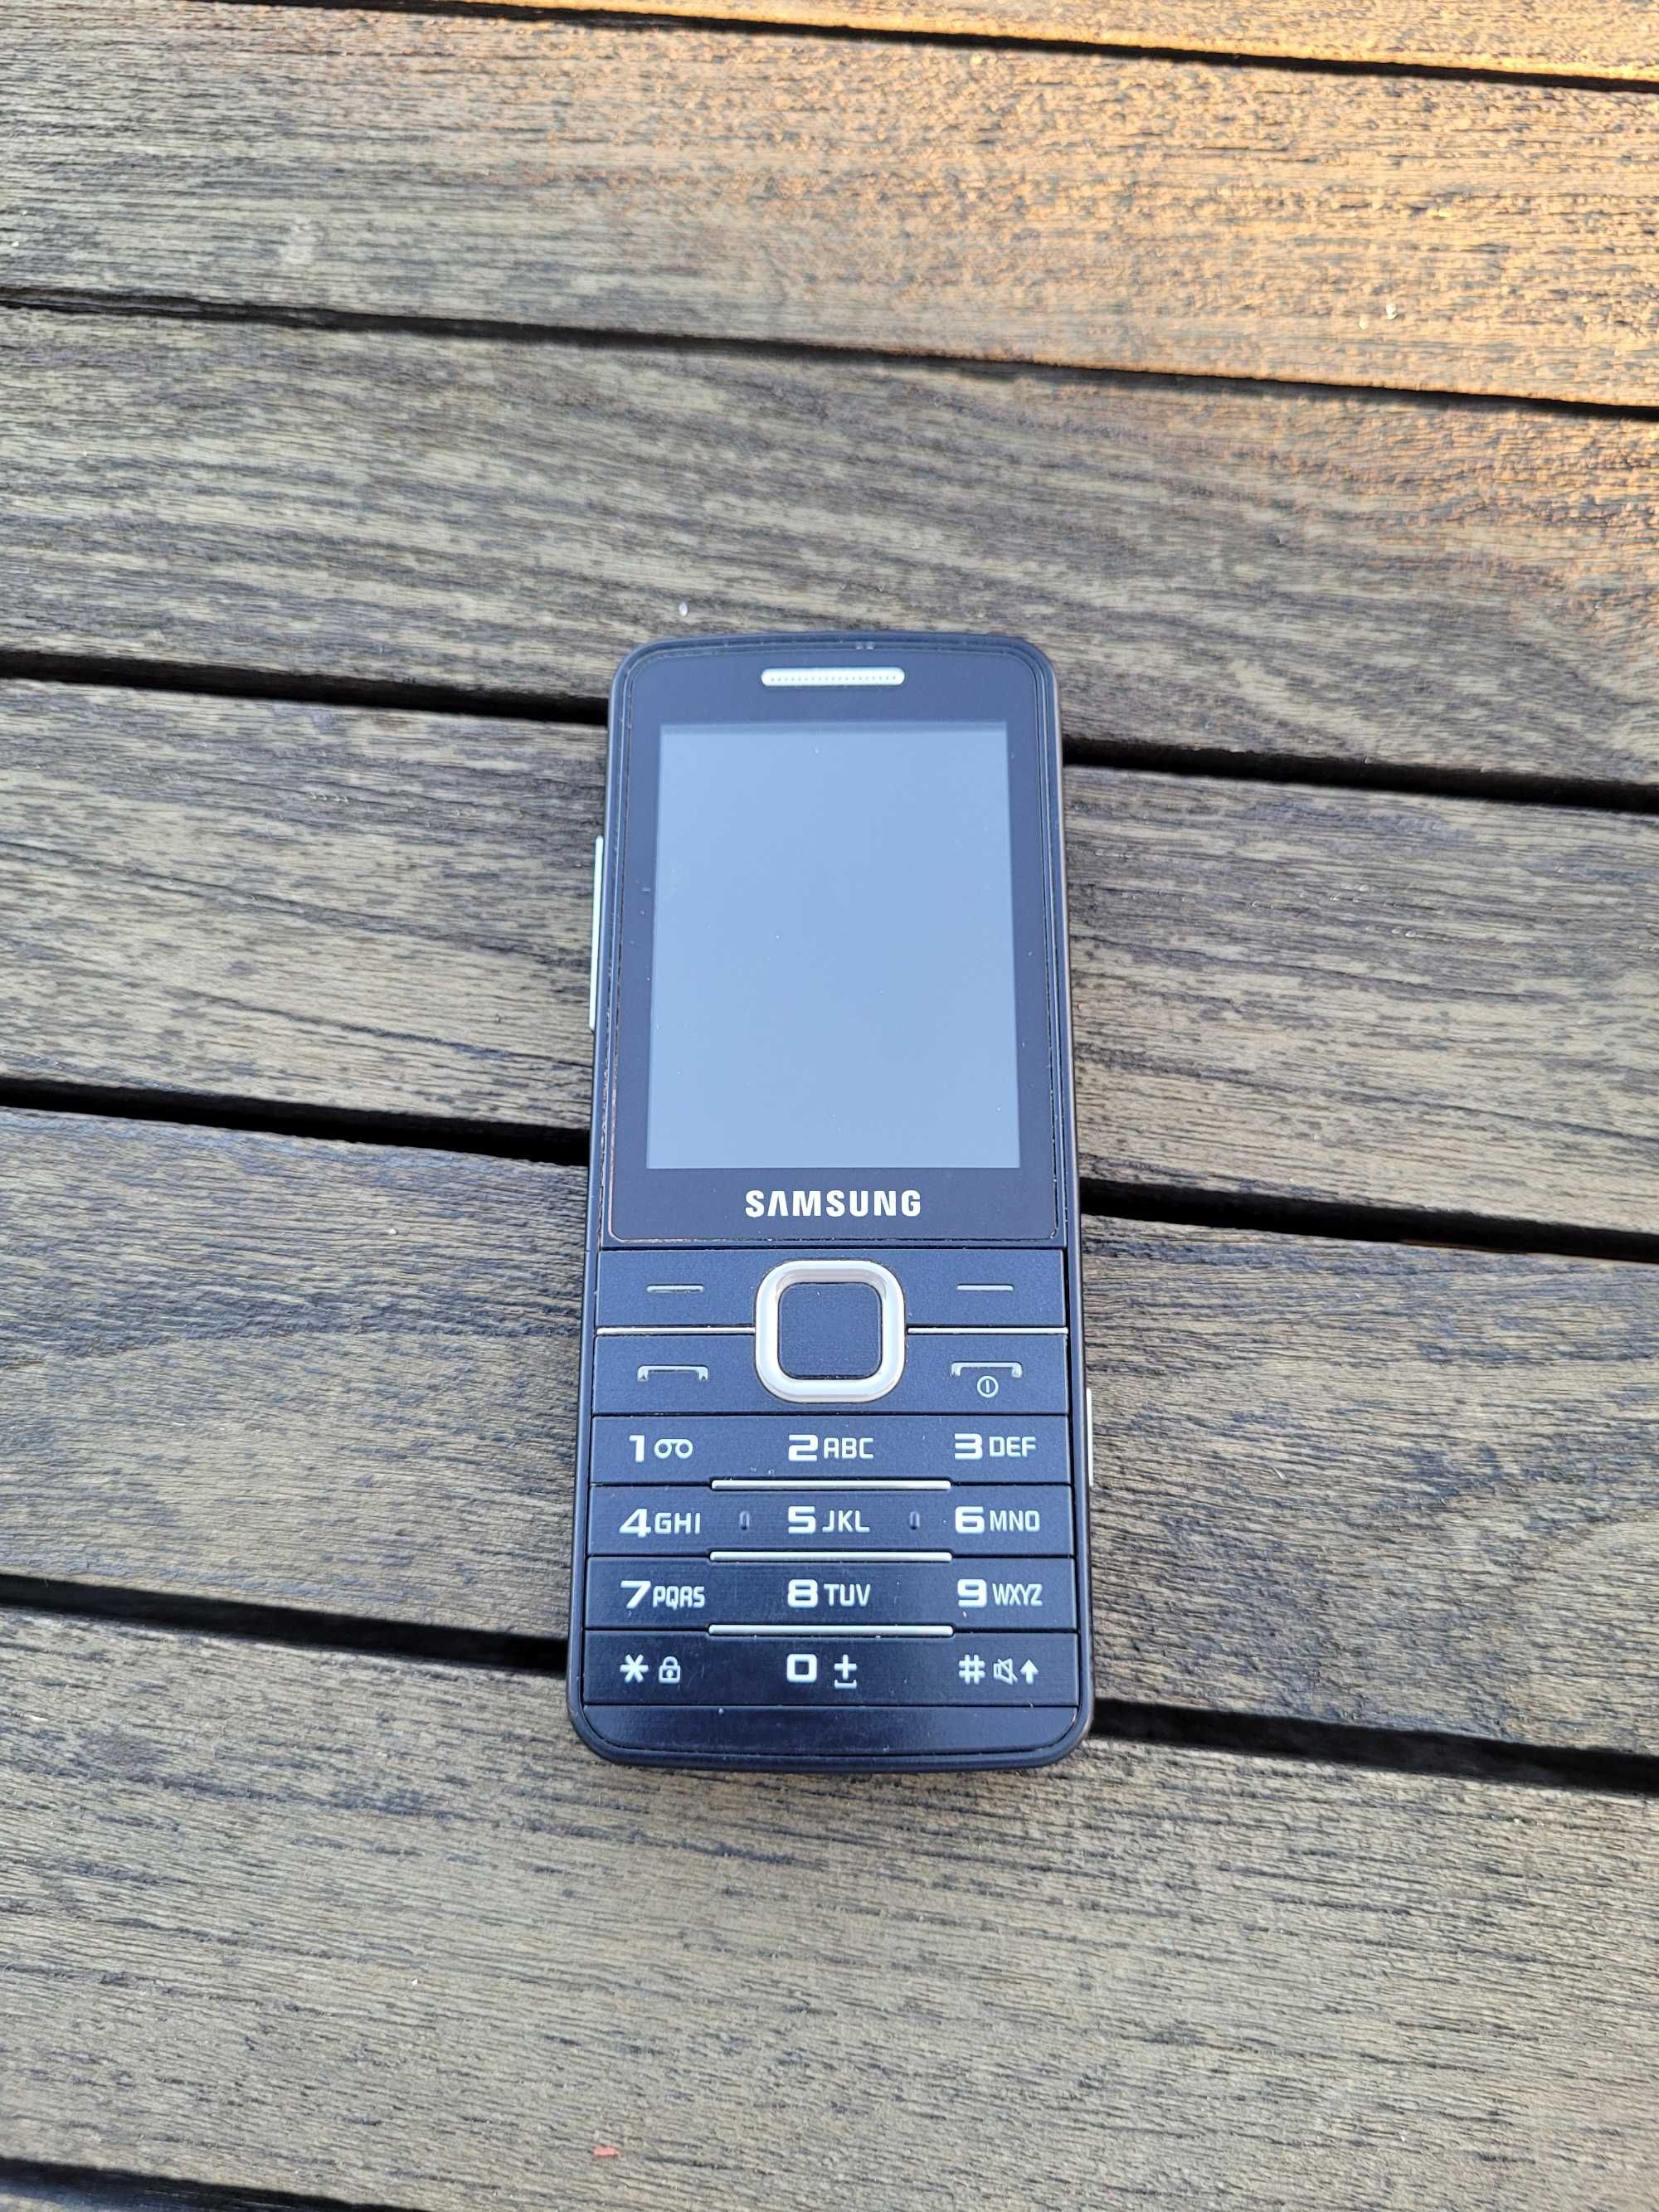 Samsung GT-s5610